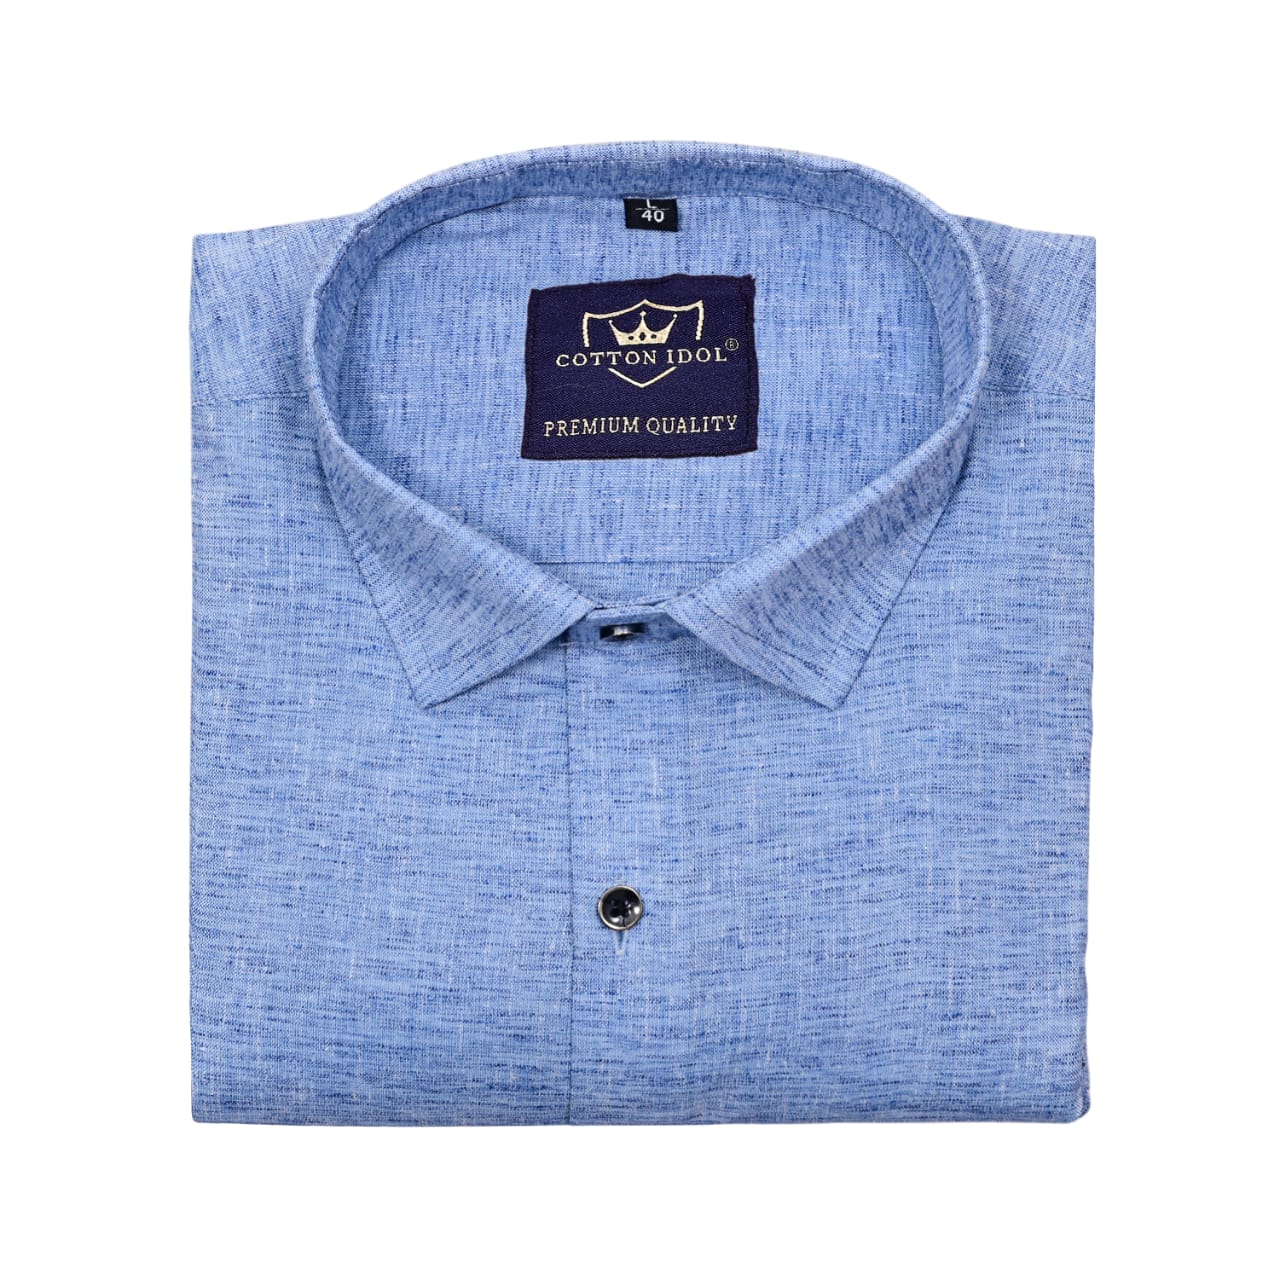 Sky blue linen cotton shirt – Idol Cotton